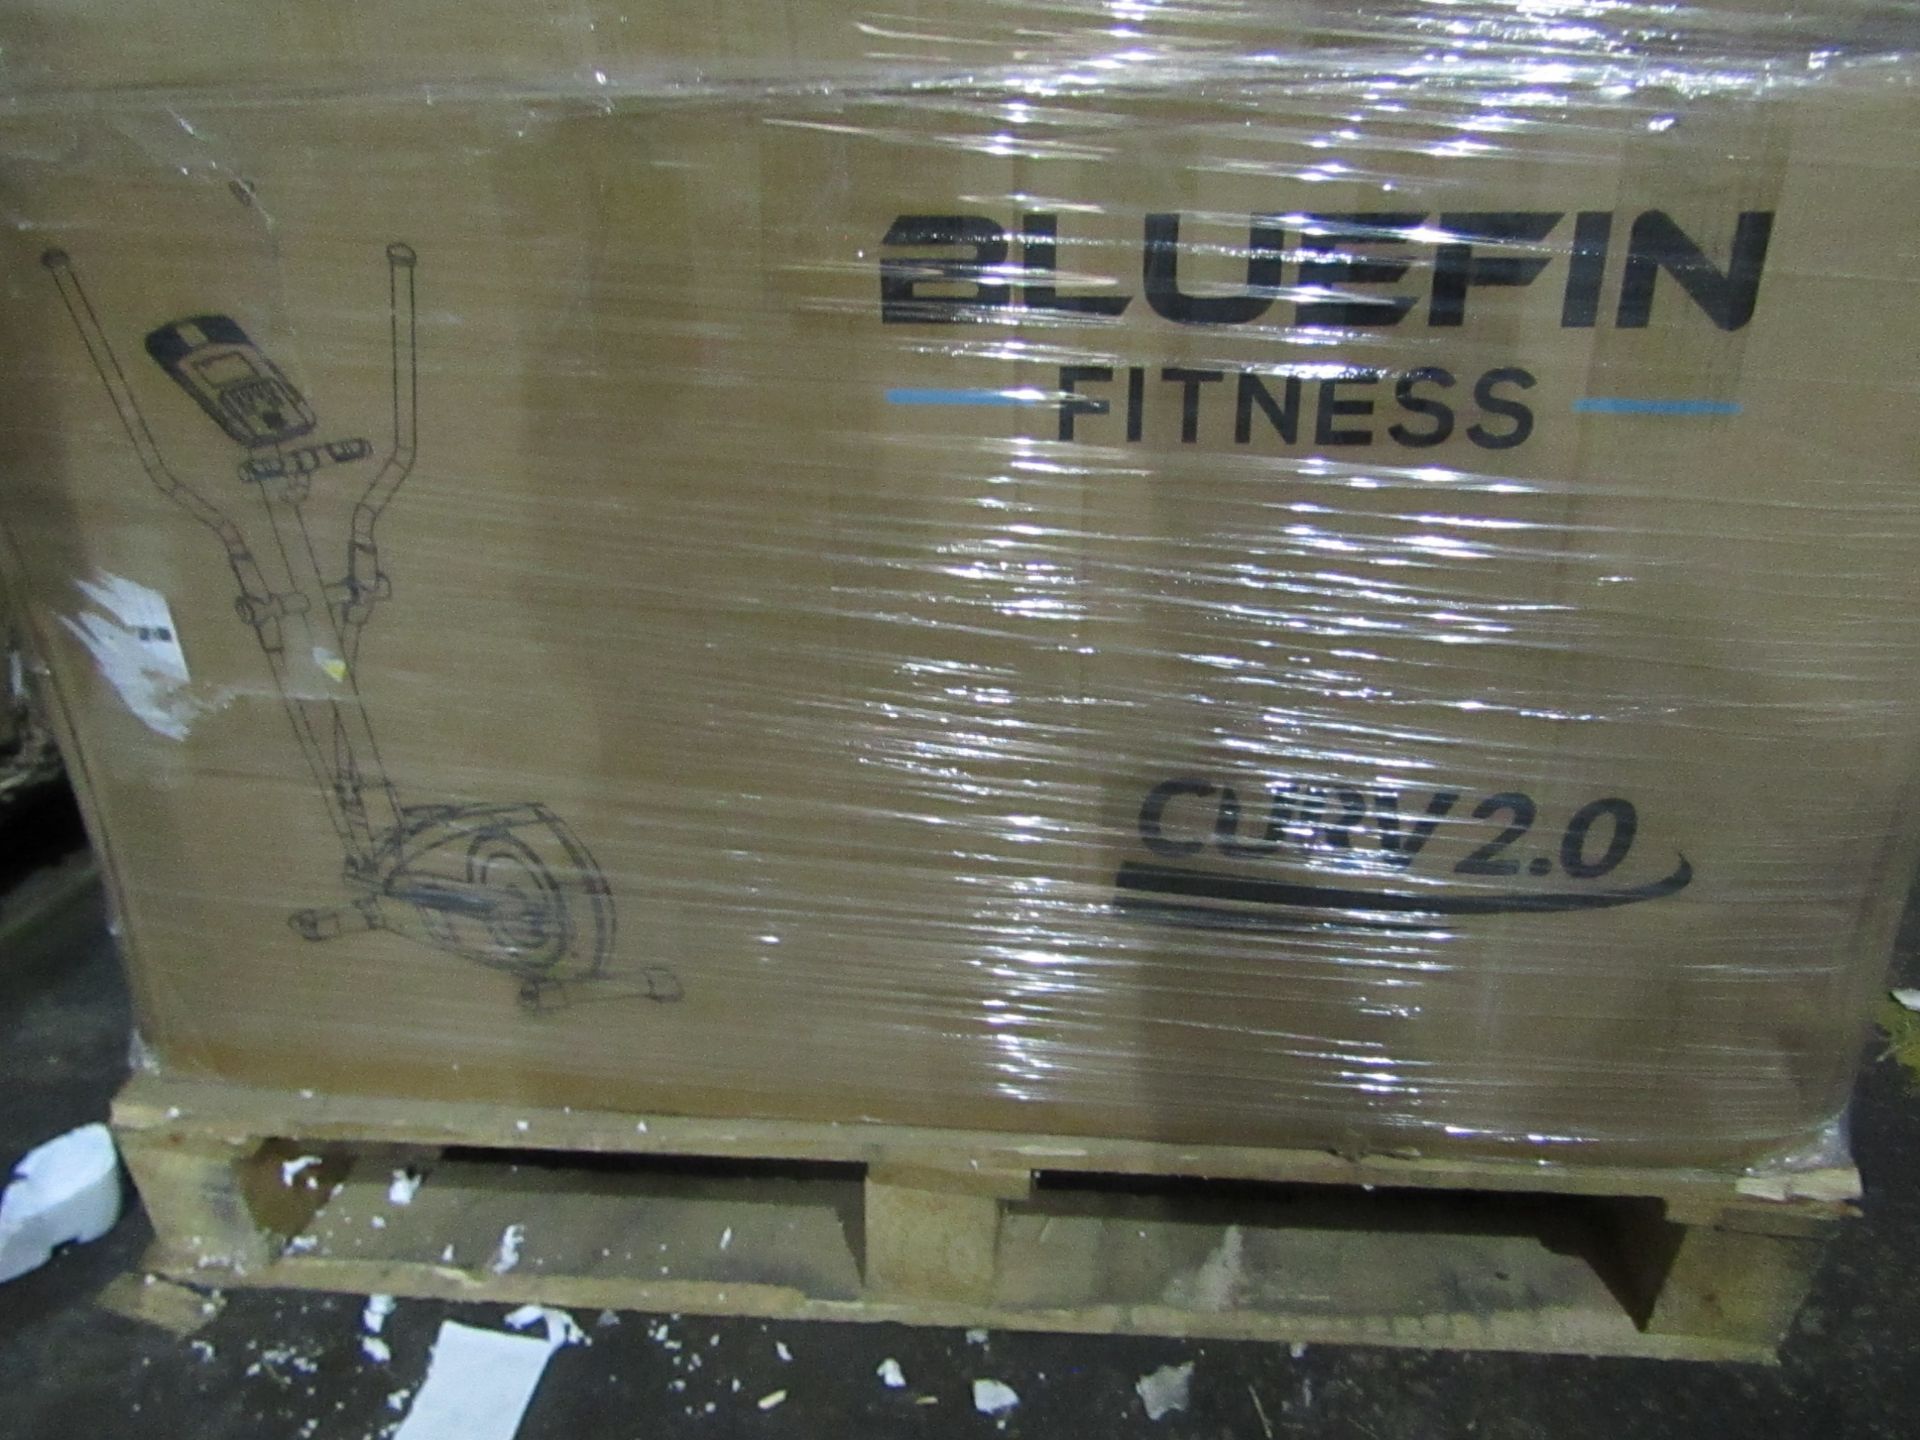 5 x Bluefin Fitness Curv 2.0 Elliptical Air-Walker Cross Trainer and Step Machine RRP “?599.00 each